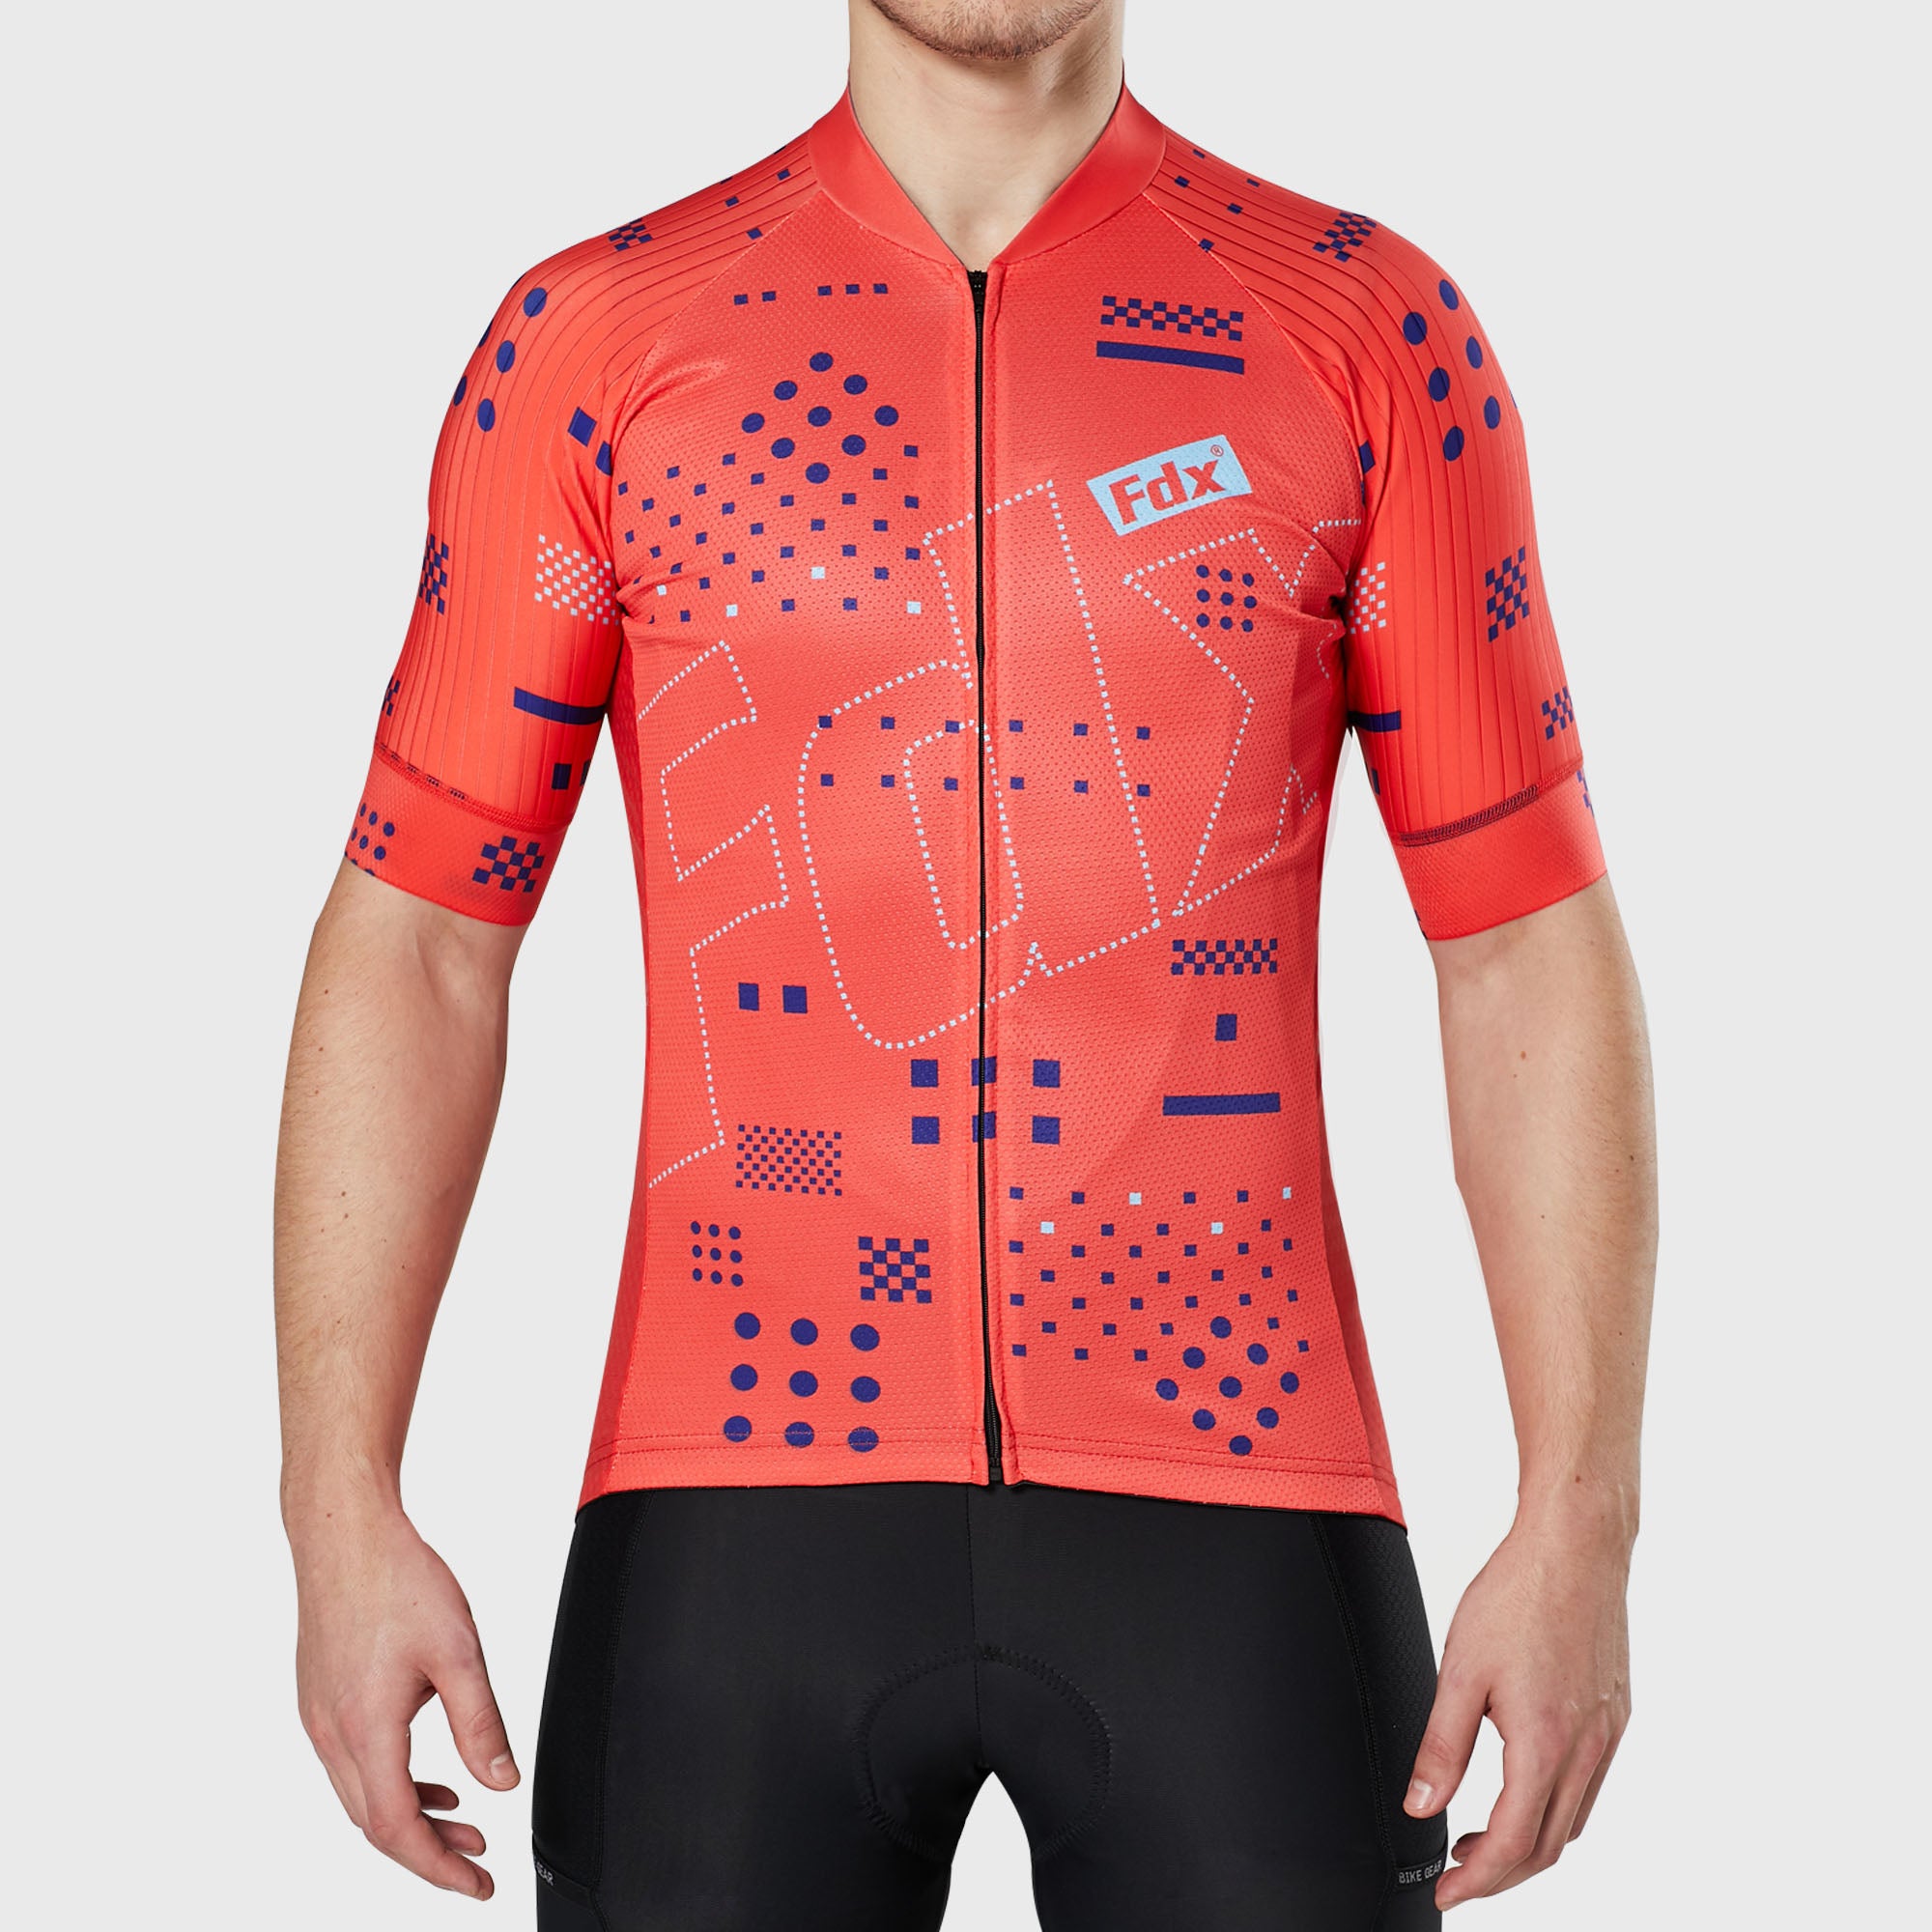 Fdx Mens Red Short Sleeve Cycling Jersey for Summer Best Road Bike Wear Top Light Weight, Full Zipper, Pockets & Hi-viz Reflectors - All Day